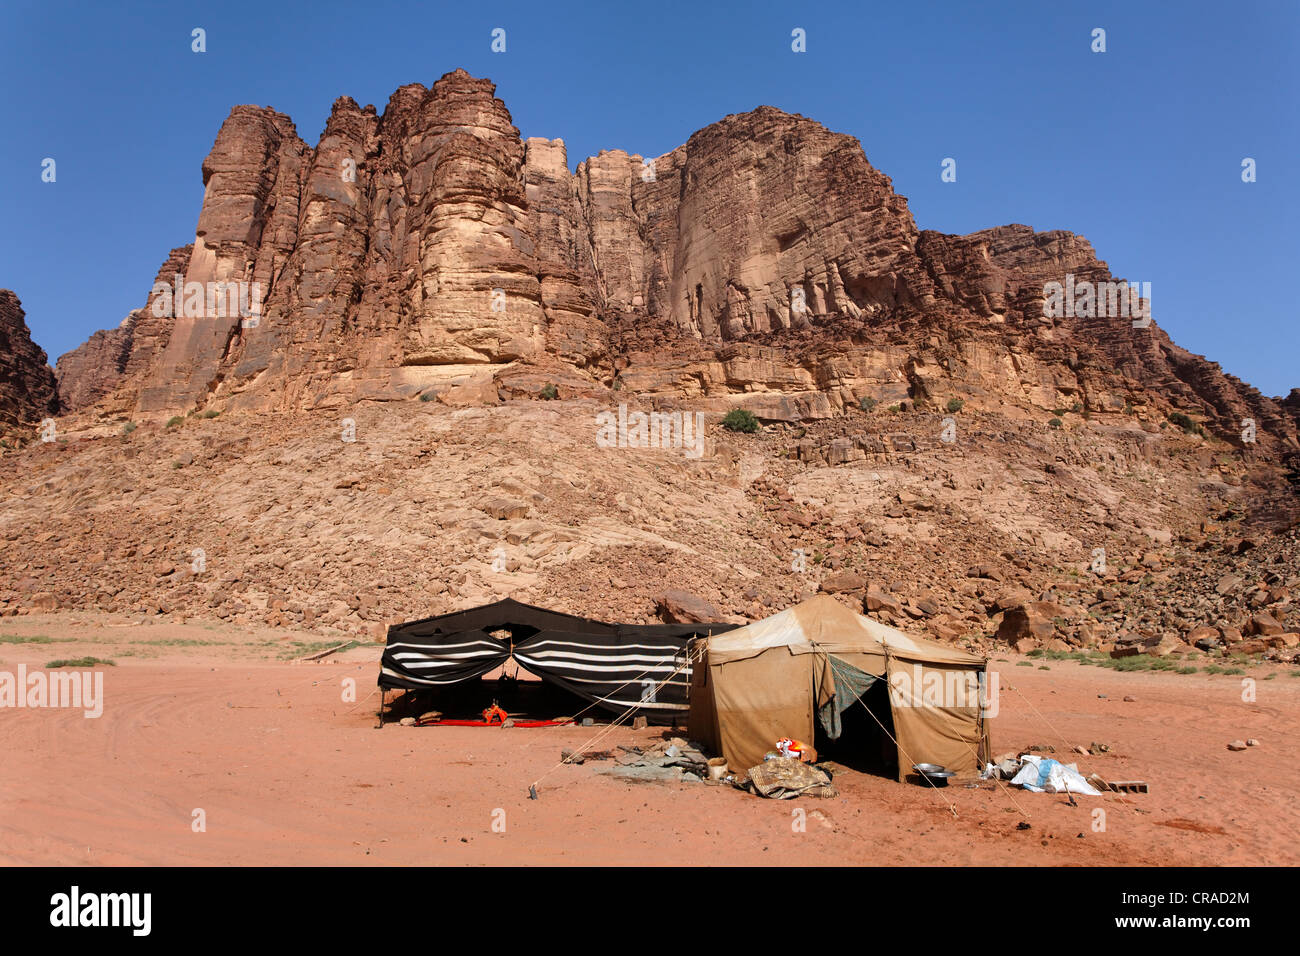 Montagne avec Lawrence's Spring, camp Bédouin, Lawrence d'Arabie, le désert, le Wadi Rum, Royaume hachémite de Jordanie, Moyen-Orient Banque D'Images